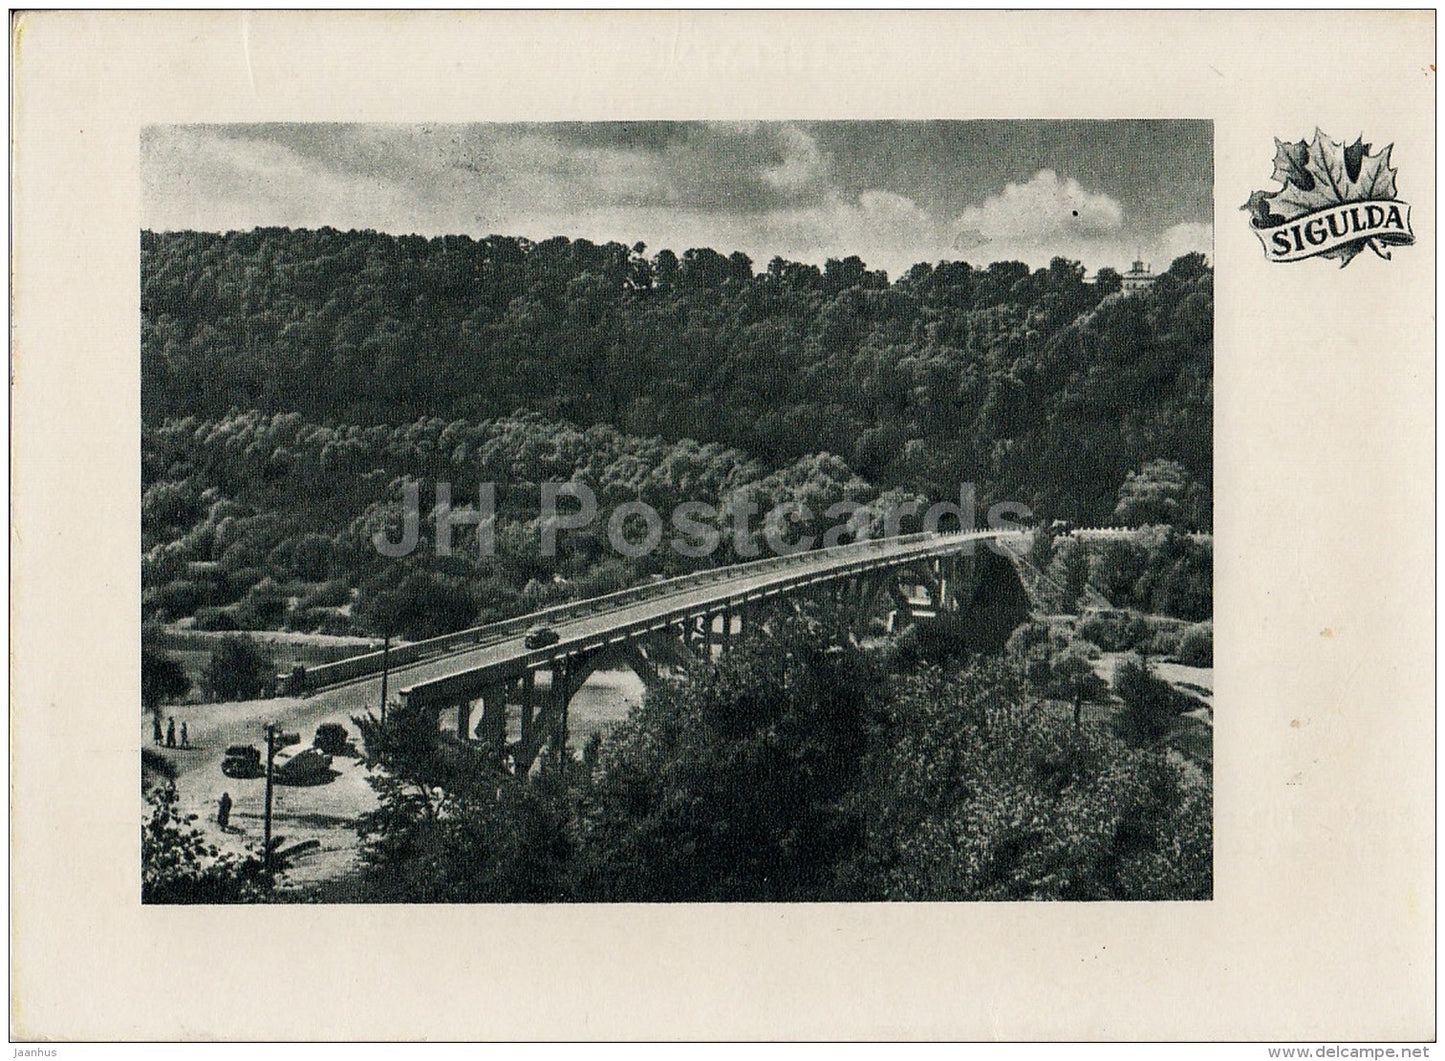 Bridge over Gauja river - Sigulda - old postcard - Latvia USSR - unused - JH Postcards